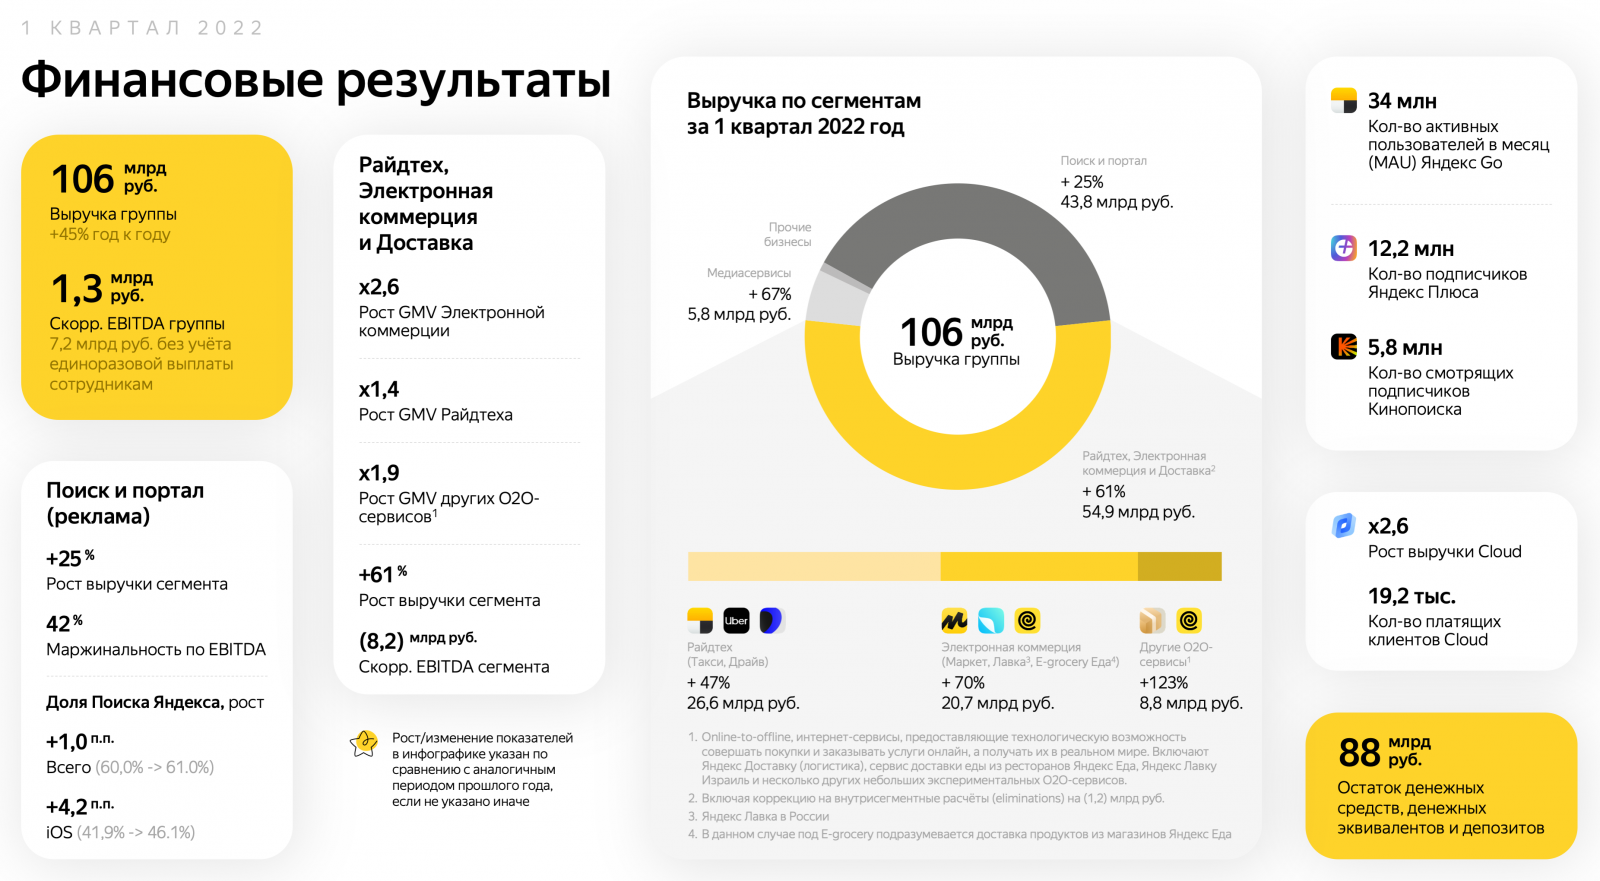 Рекламная выручка «Яндекса» составила 41,7 млрд рублей в первом квартале 2022 года